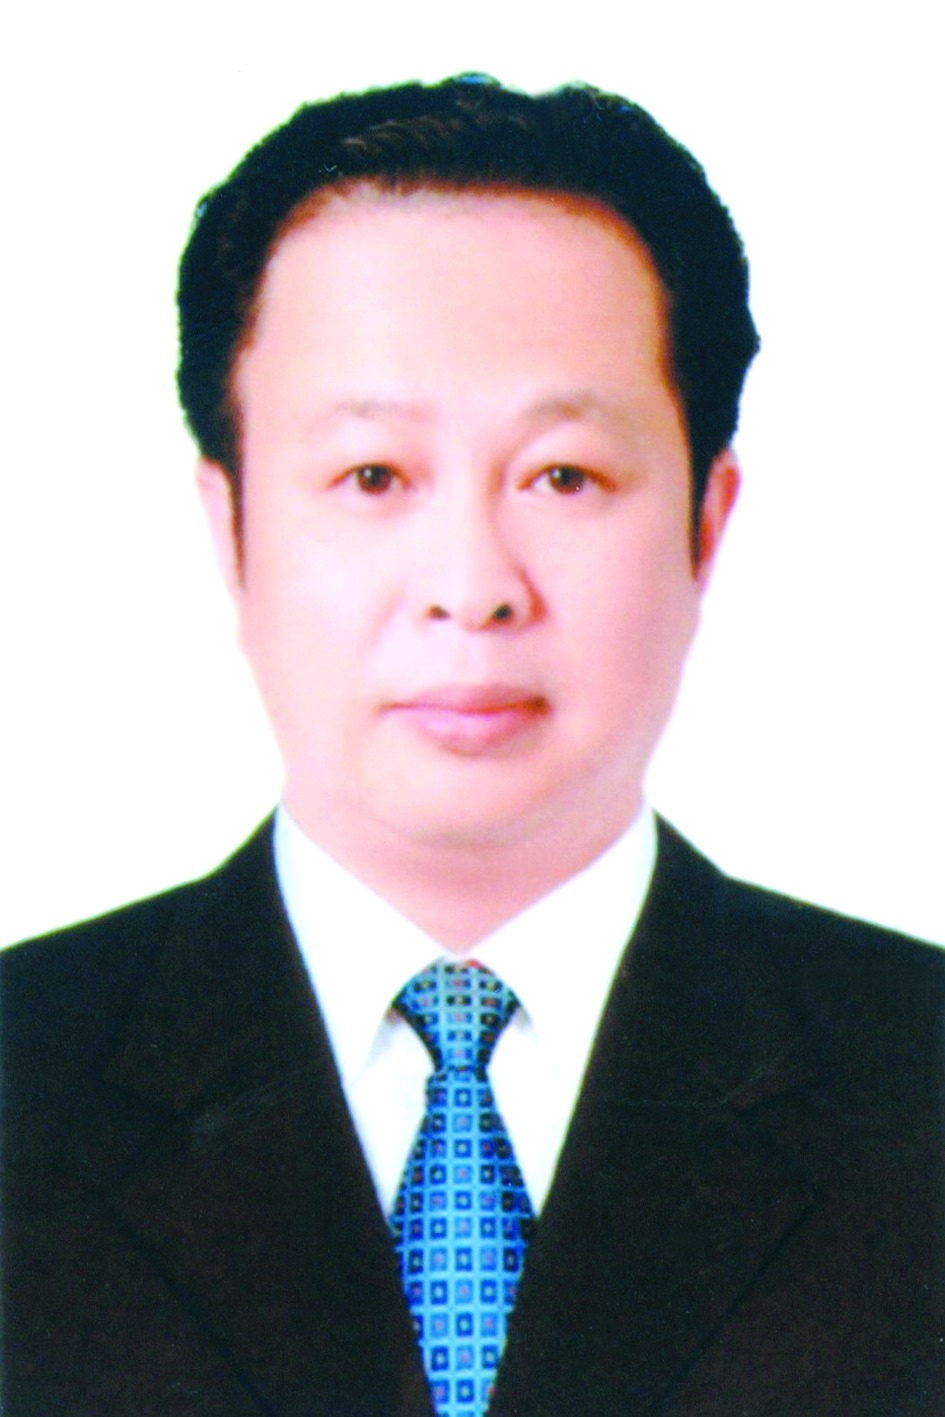 Chương trình hành động của Giám đốc Sở Văn hóa và Thể thao Hà Nội Trần Thế Cương, ứng cử viên đại biểu HĐND TP Hà Nội nhiệm kỳ 2021 - 2026 - Ảnh 1